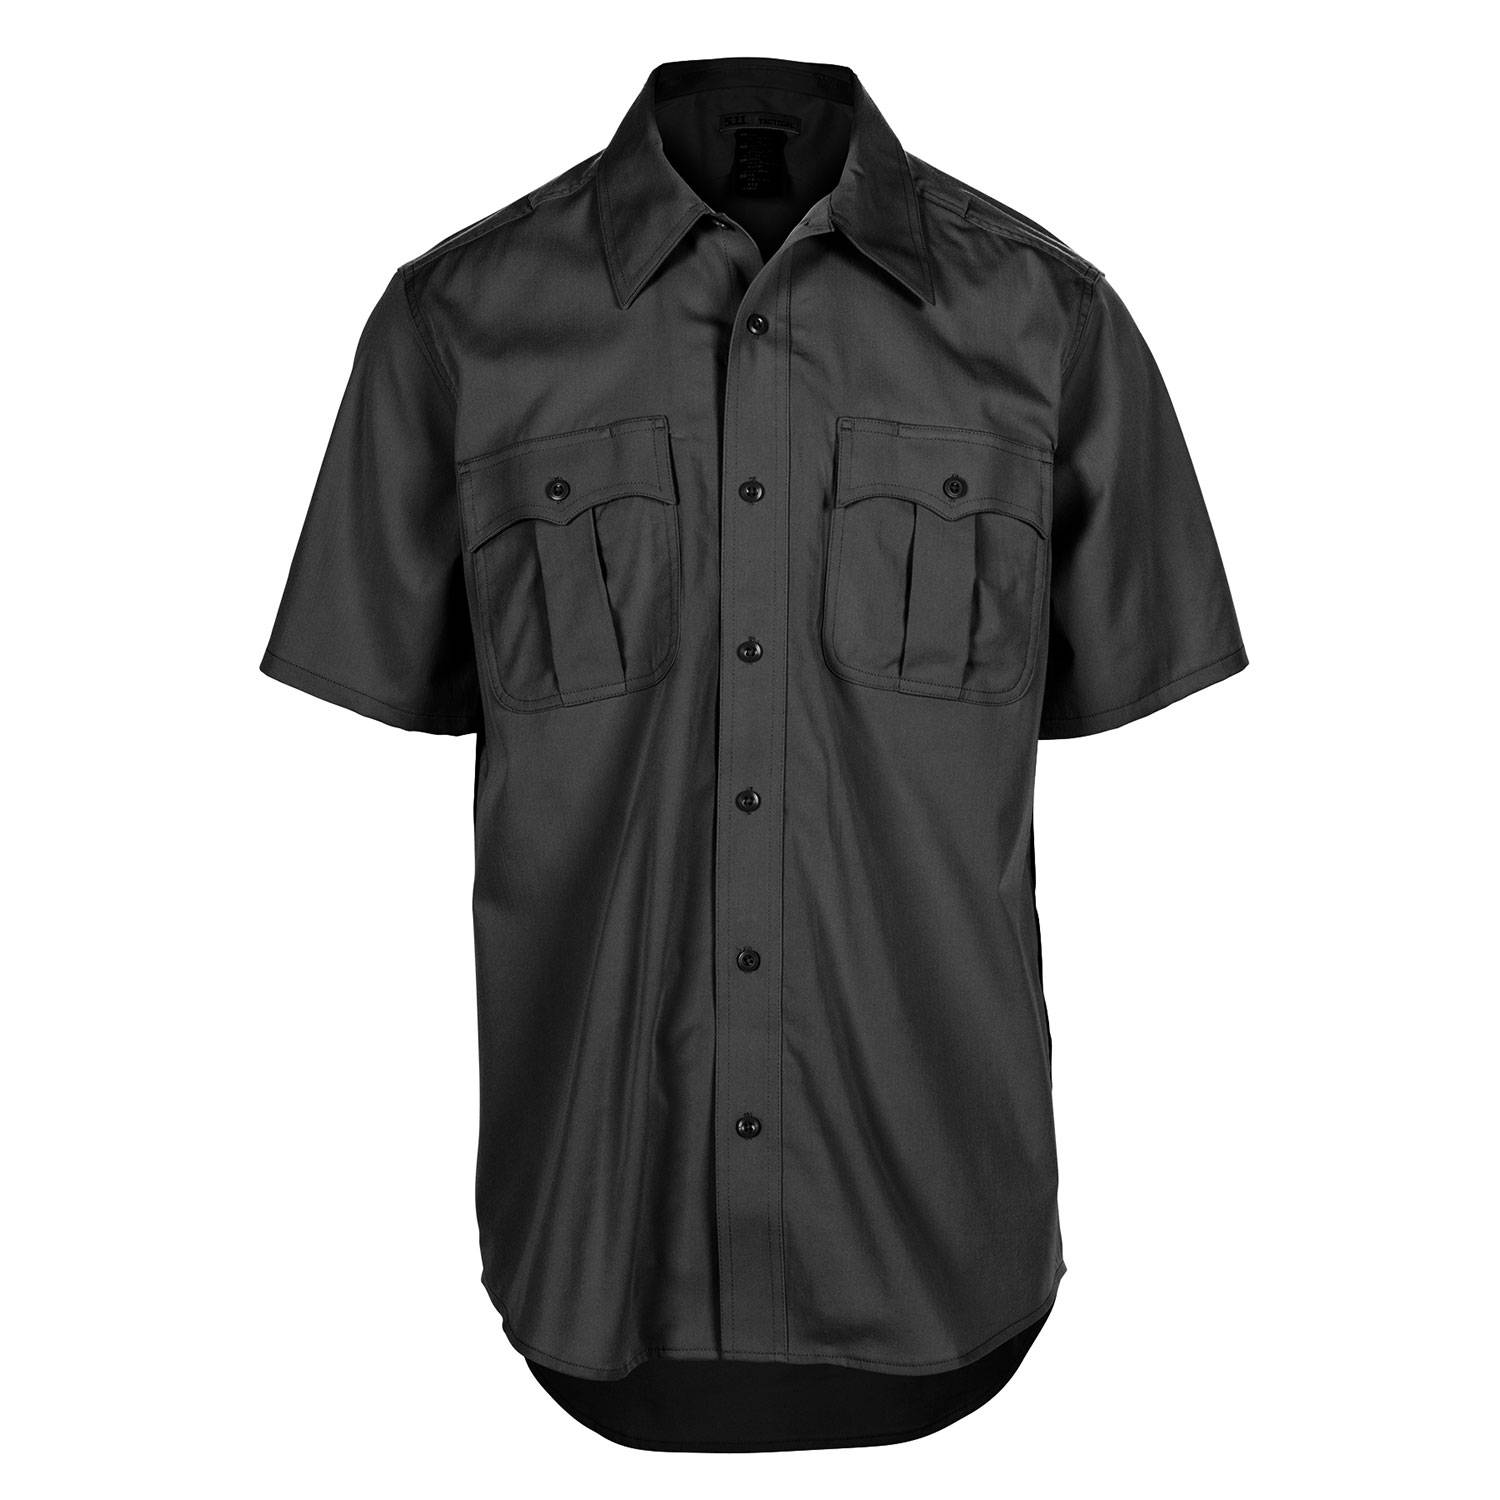 5.11 Class A Flex-Tac Poly/Wool Twill Short Sleeve Shirt